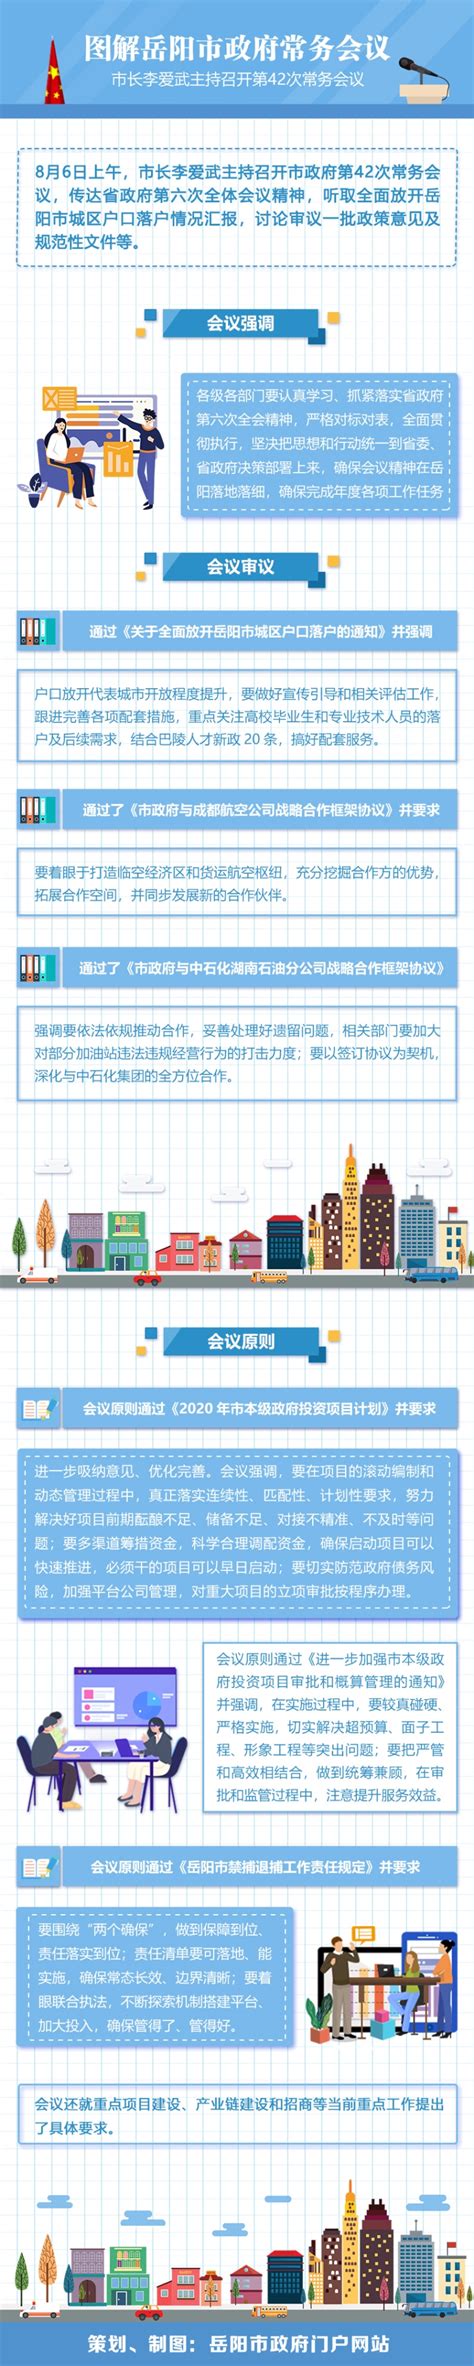 2021年1-12月岳阳市办理省级重点民生 实事项目情况-岳阳市政府门户网站